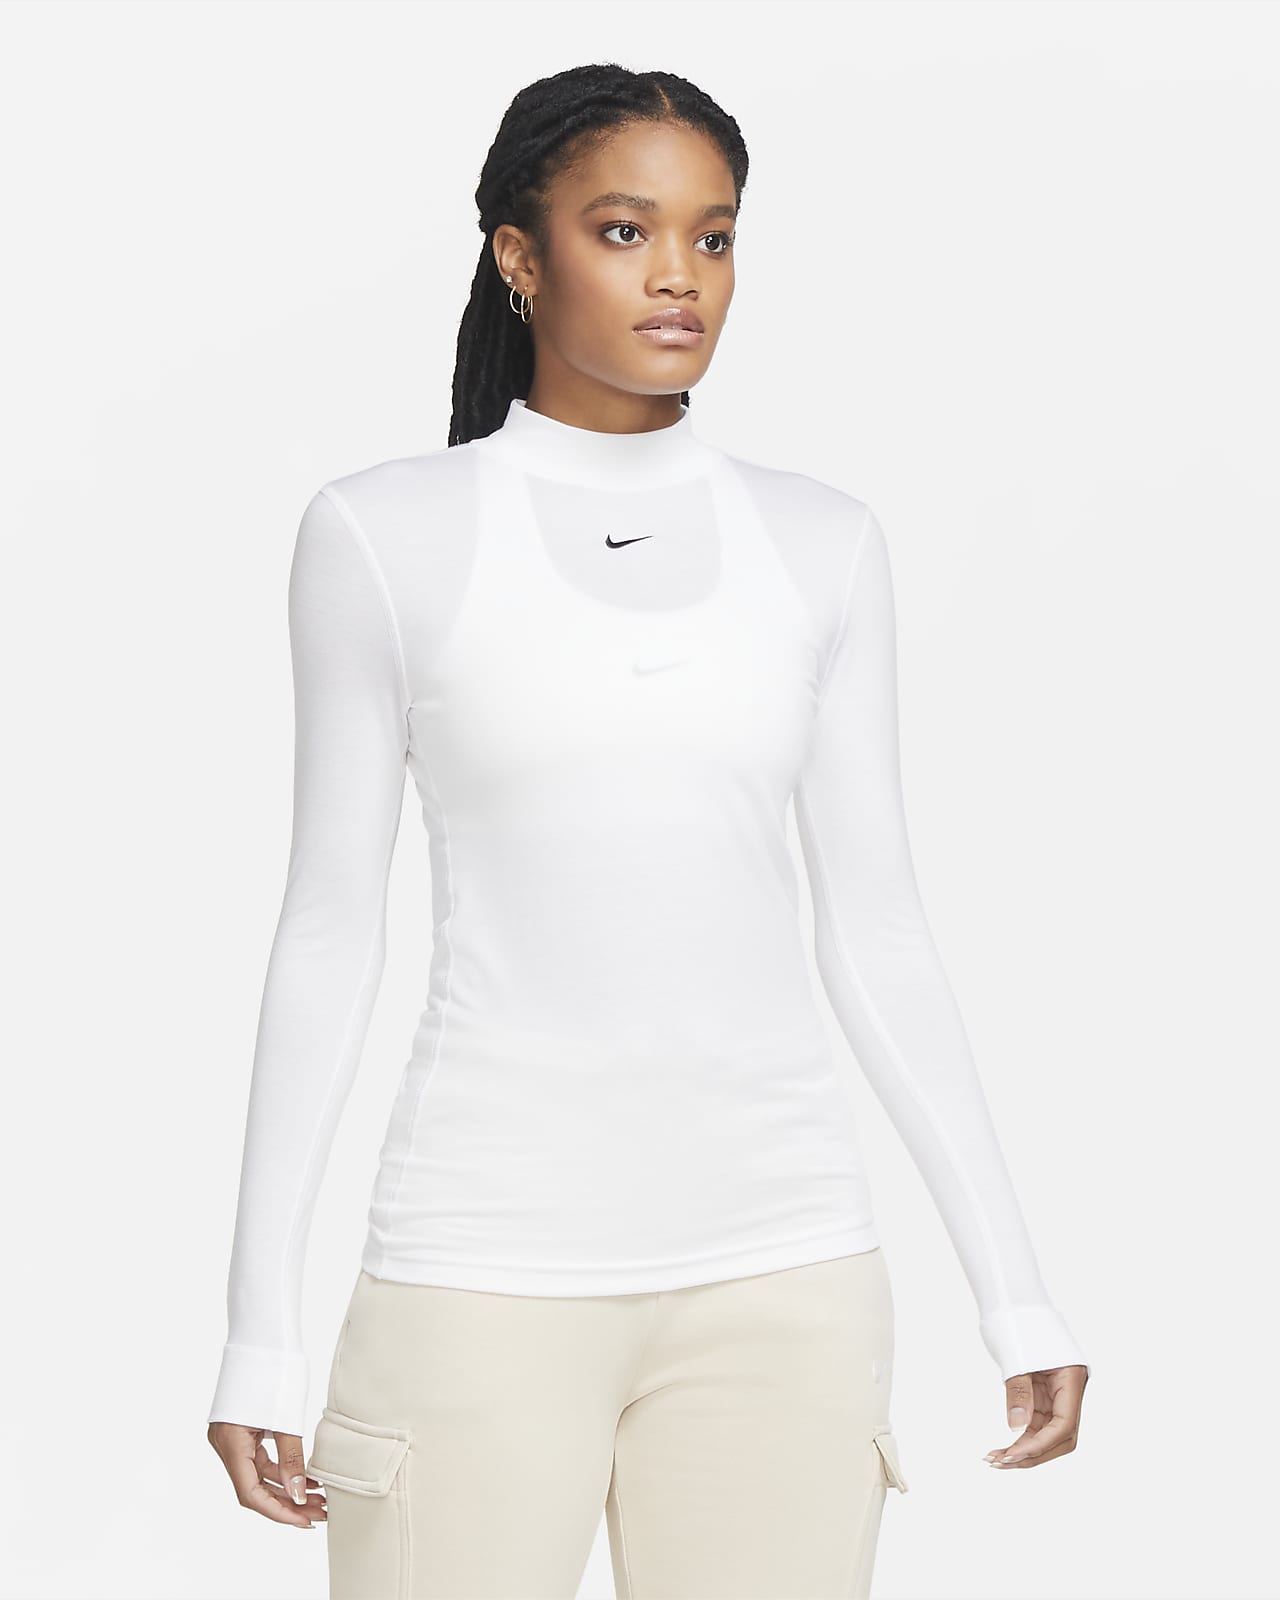 Nike Sportswear Women's Long-Sleeve Mock-Neck Top. Nike EG